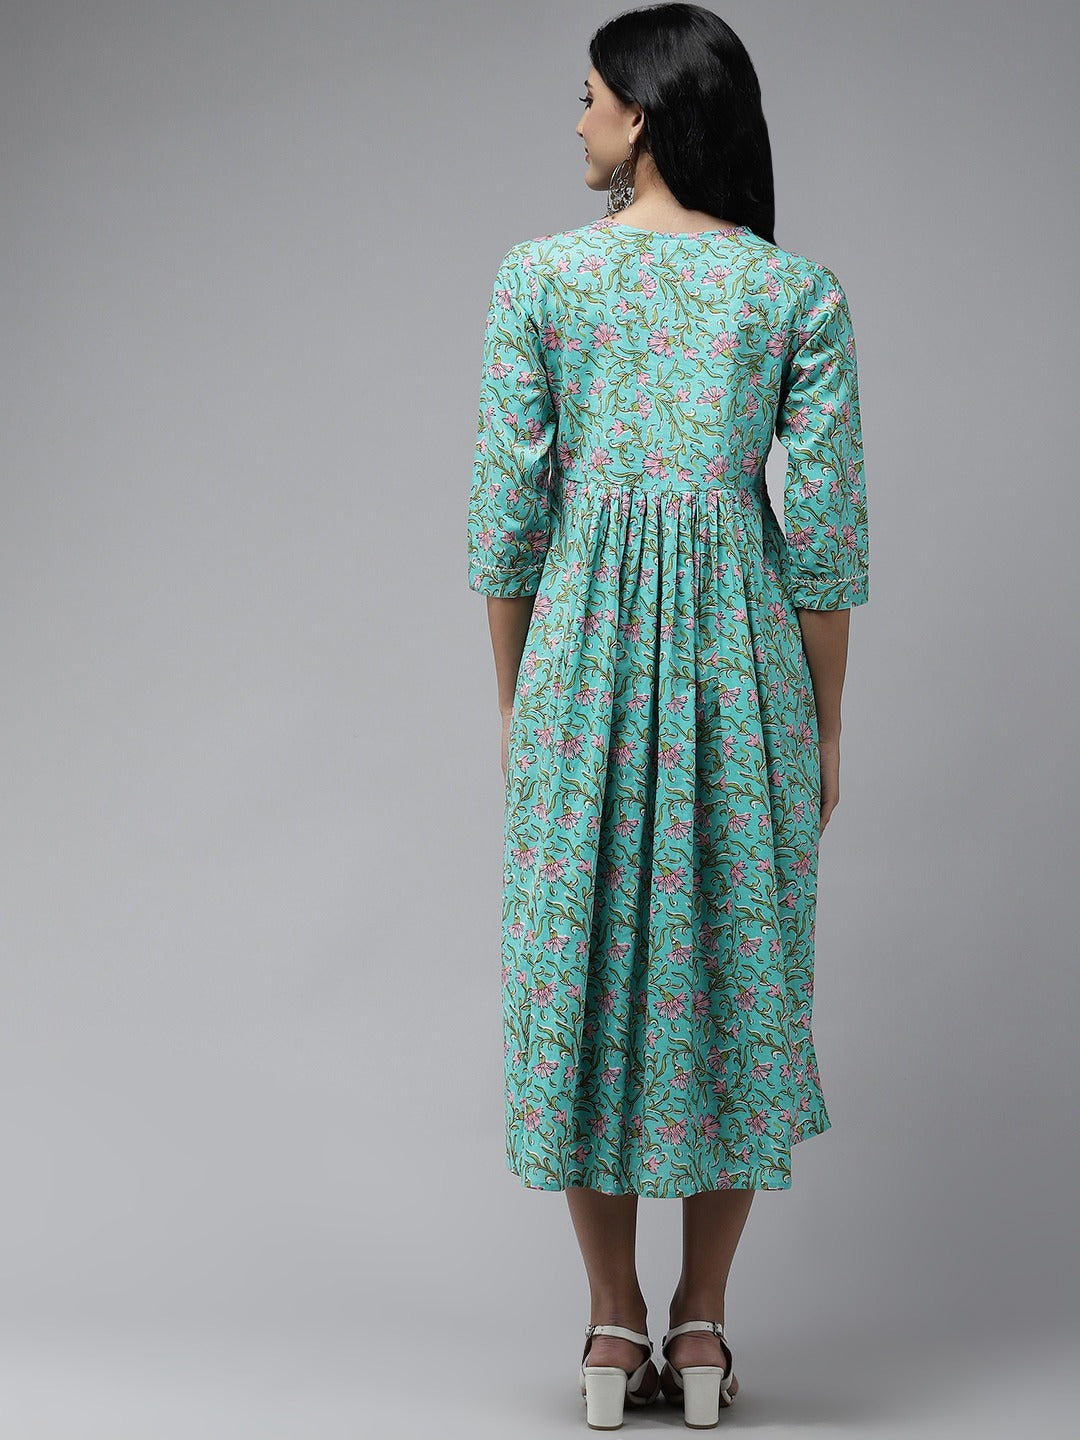 Sea Green Embroidered Midi Dress-Yufta Store-5212DRSSGS